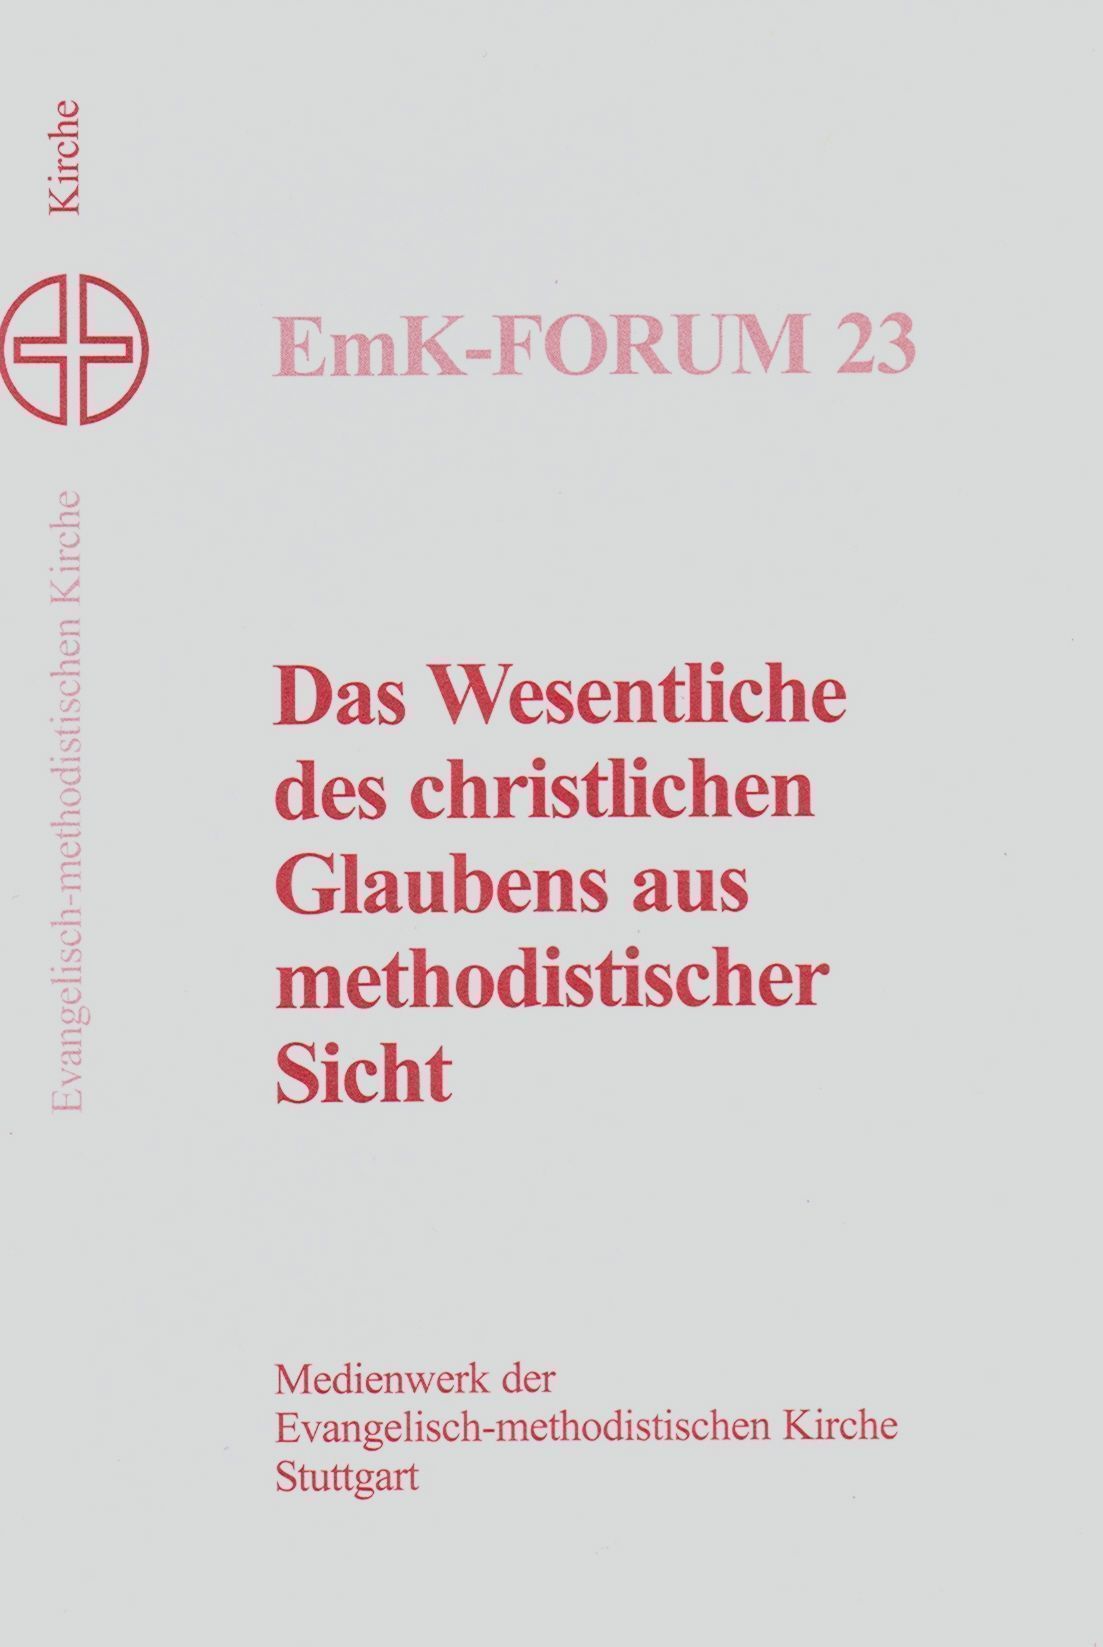 Das Wesentliche des christlichen Glaubens aus methodistischer Sicht EmK-Forum 23